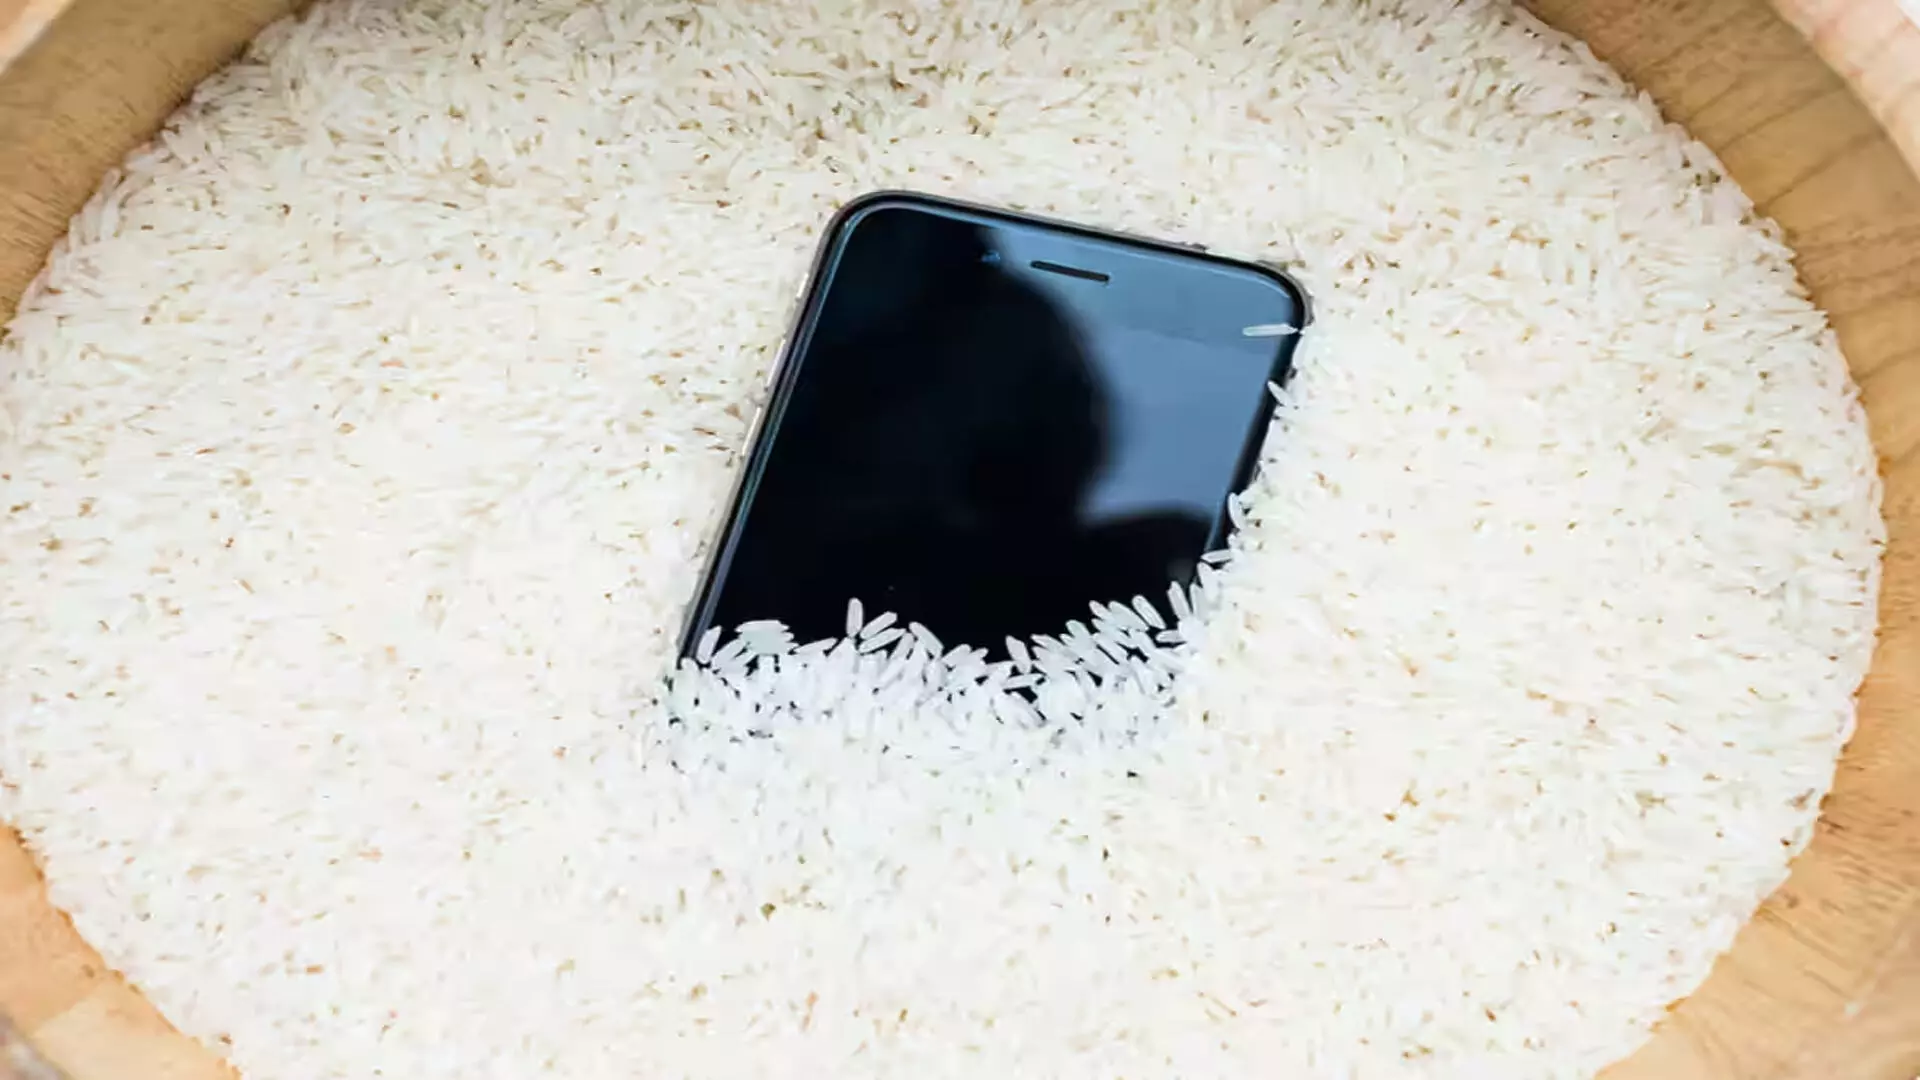 iPhone के लिए चावल का उपयोग करने के खिलाफ चेतावनी : जानें इसके बजाय क्या करना है